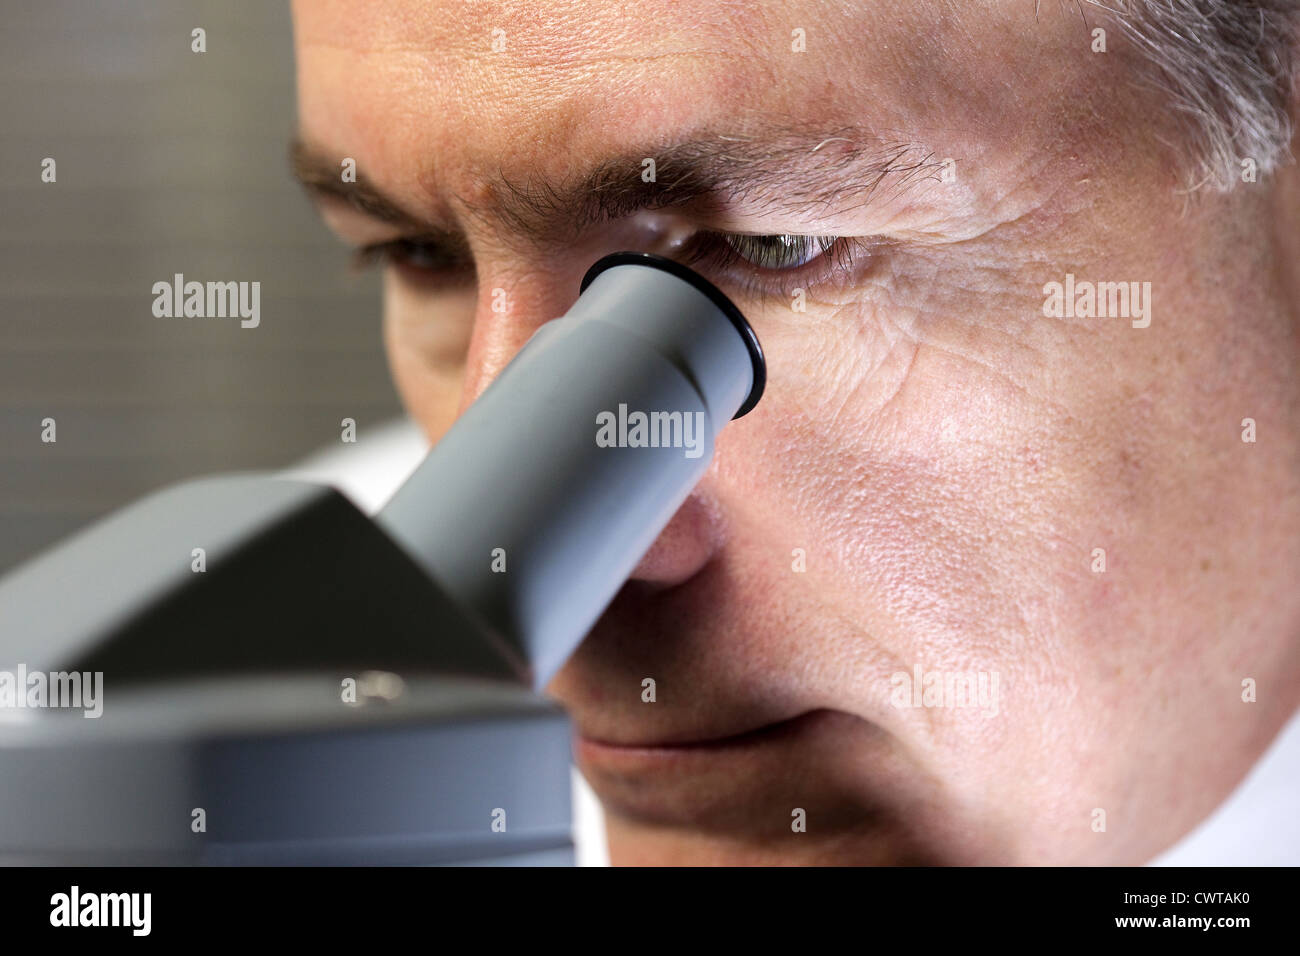 Eine Nahaufnahme von einem Arzt oder Wissenschaftler, wie er etwas unter dem Mikroskop untersucht. Stockfoto